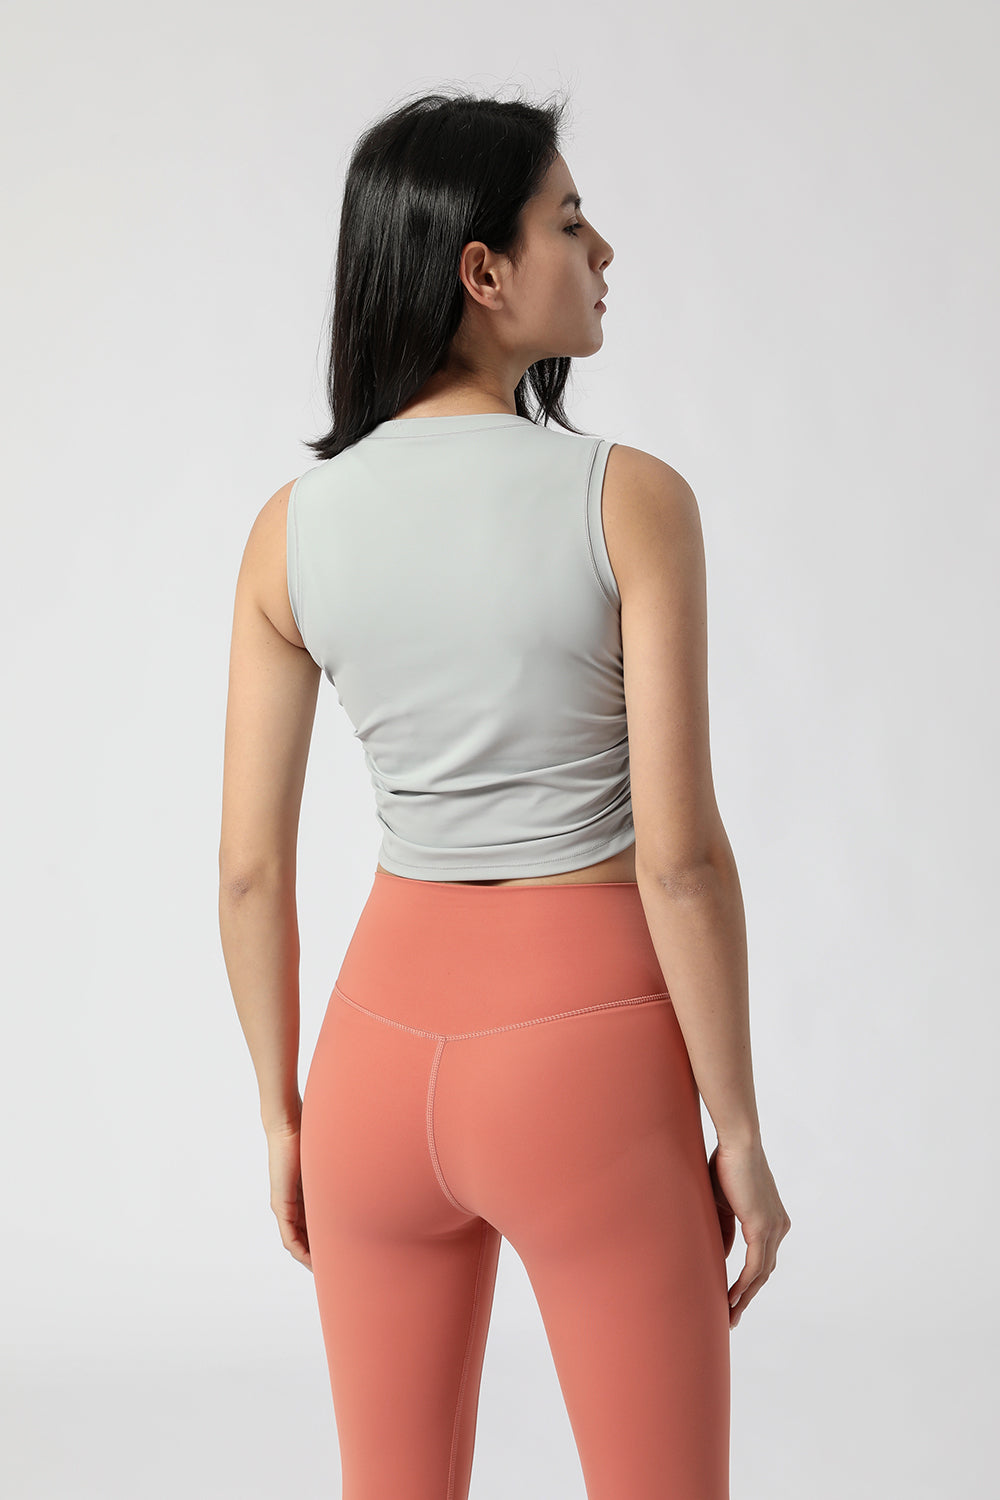 新款运动背心女 瑜伽运动背心 侧腰束折露脐健身背心女2095